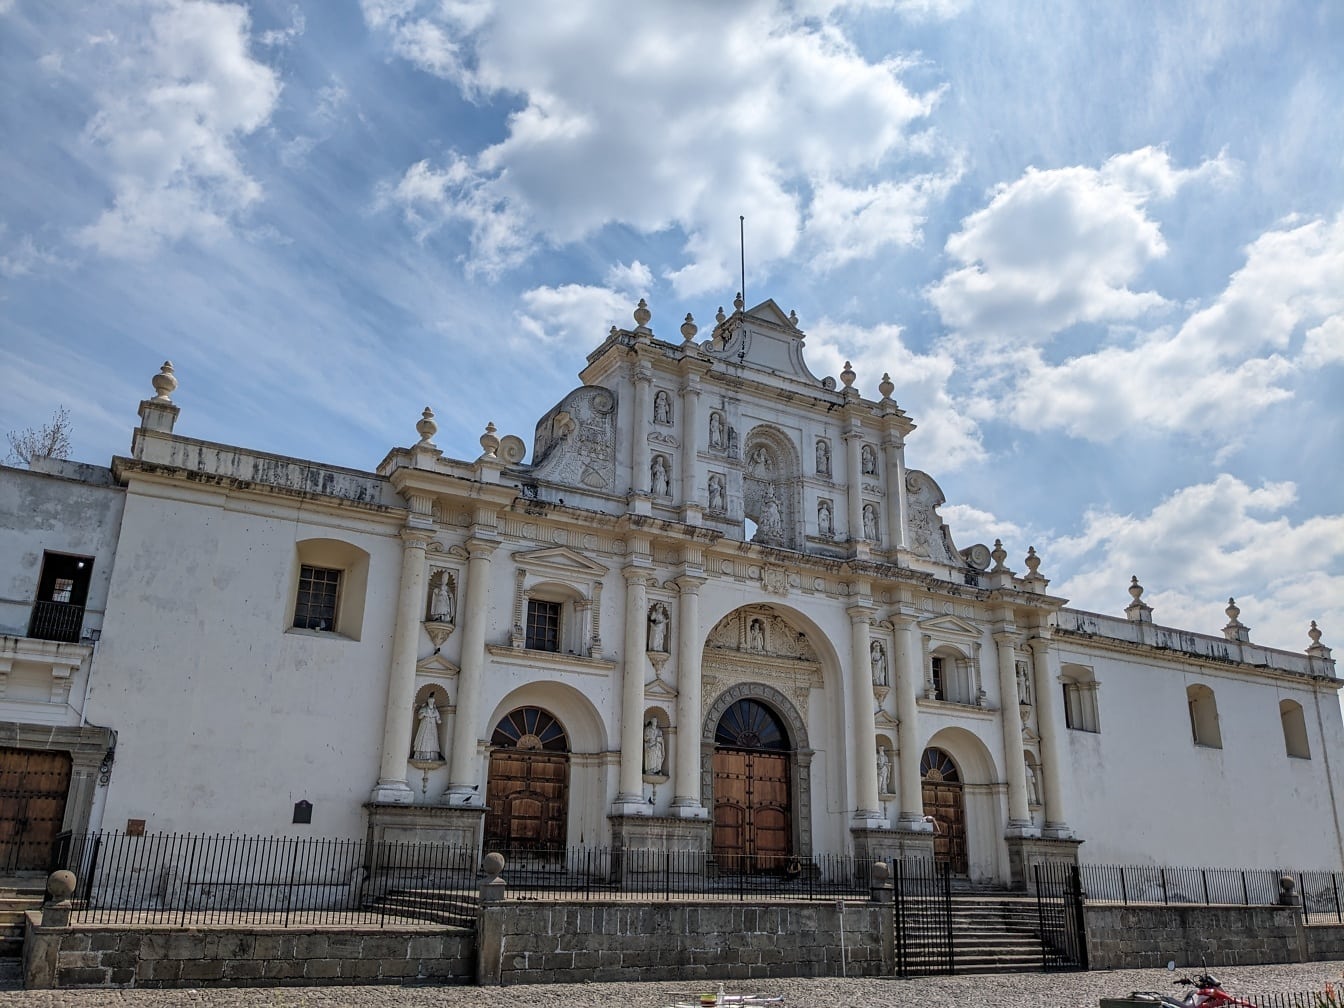 Kathedrale des Heiligen José in Antigua in Guatemala im kolonialen Baustil